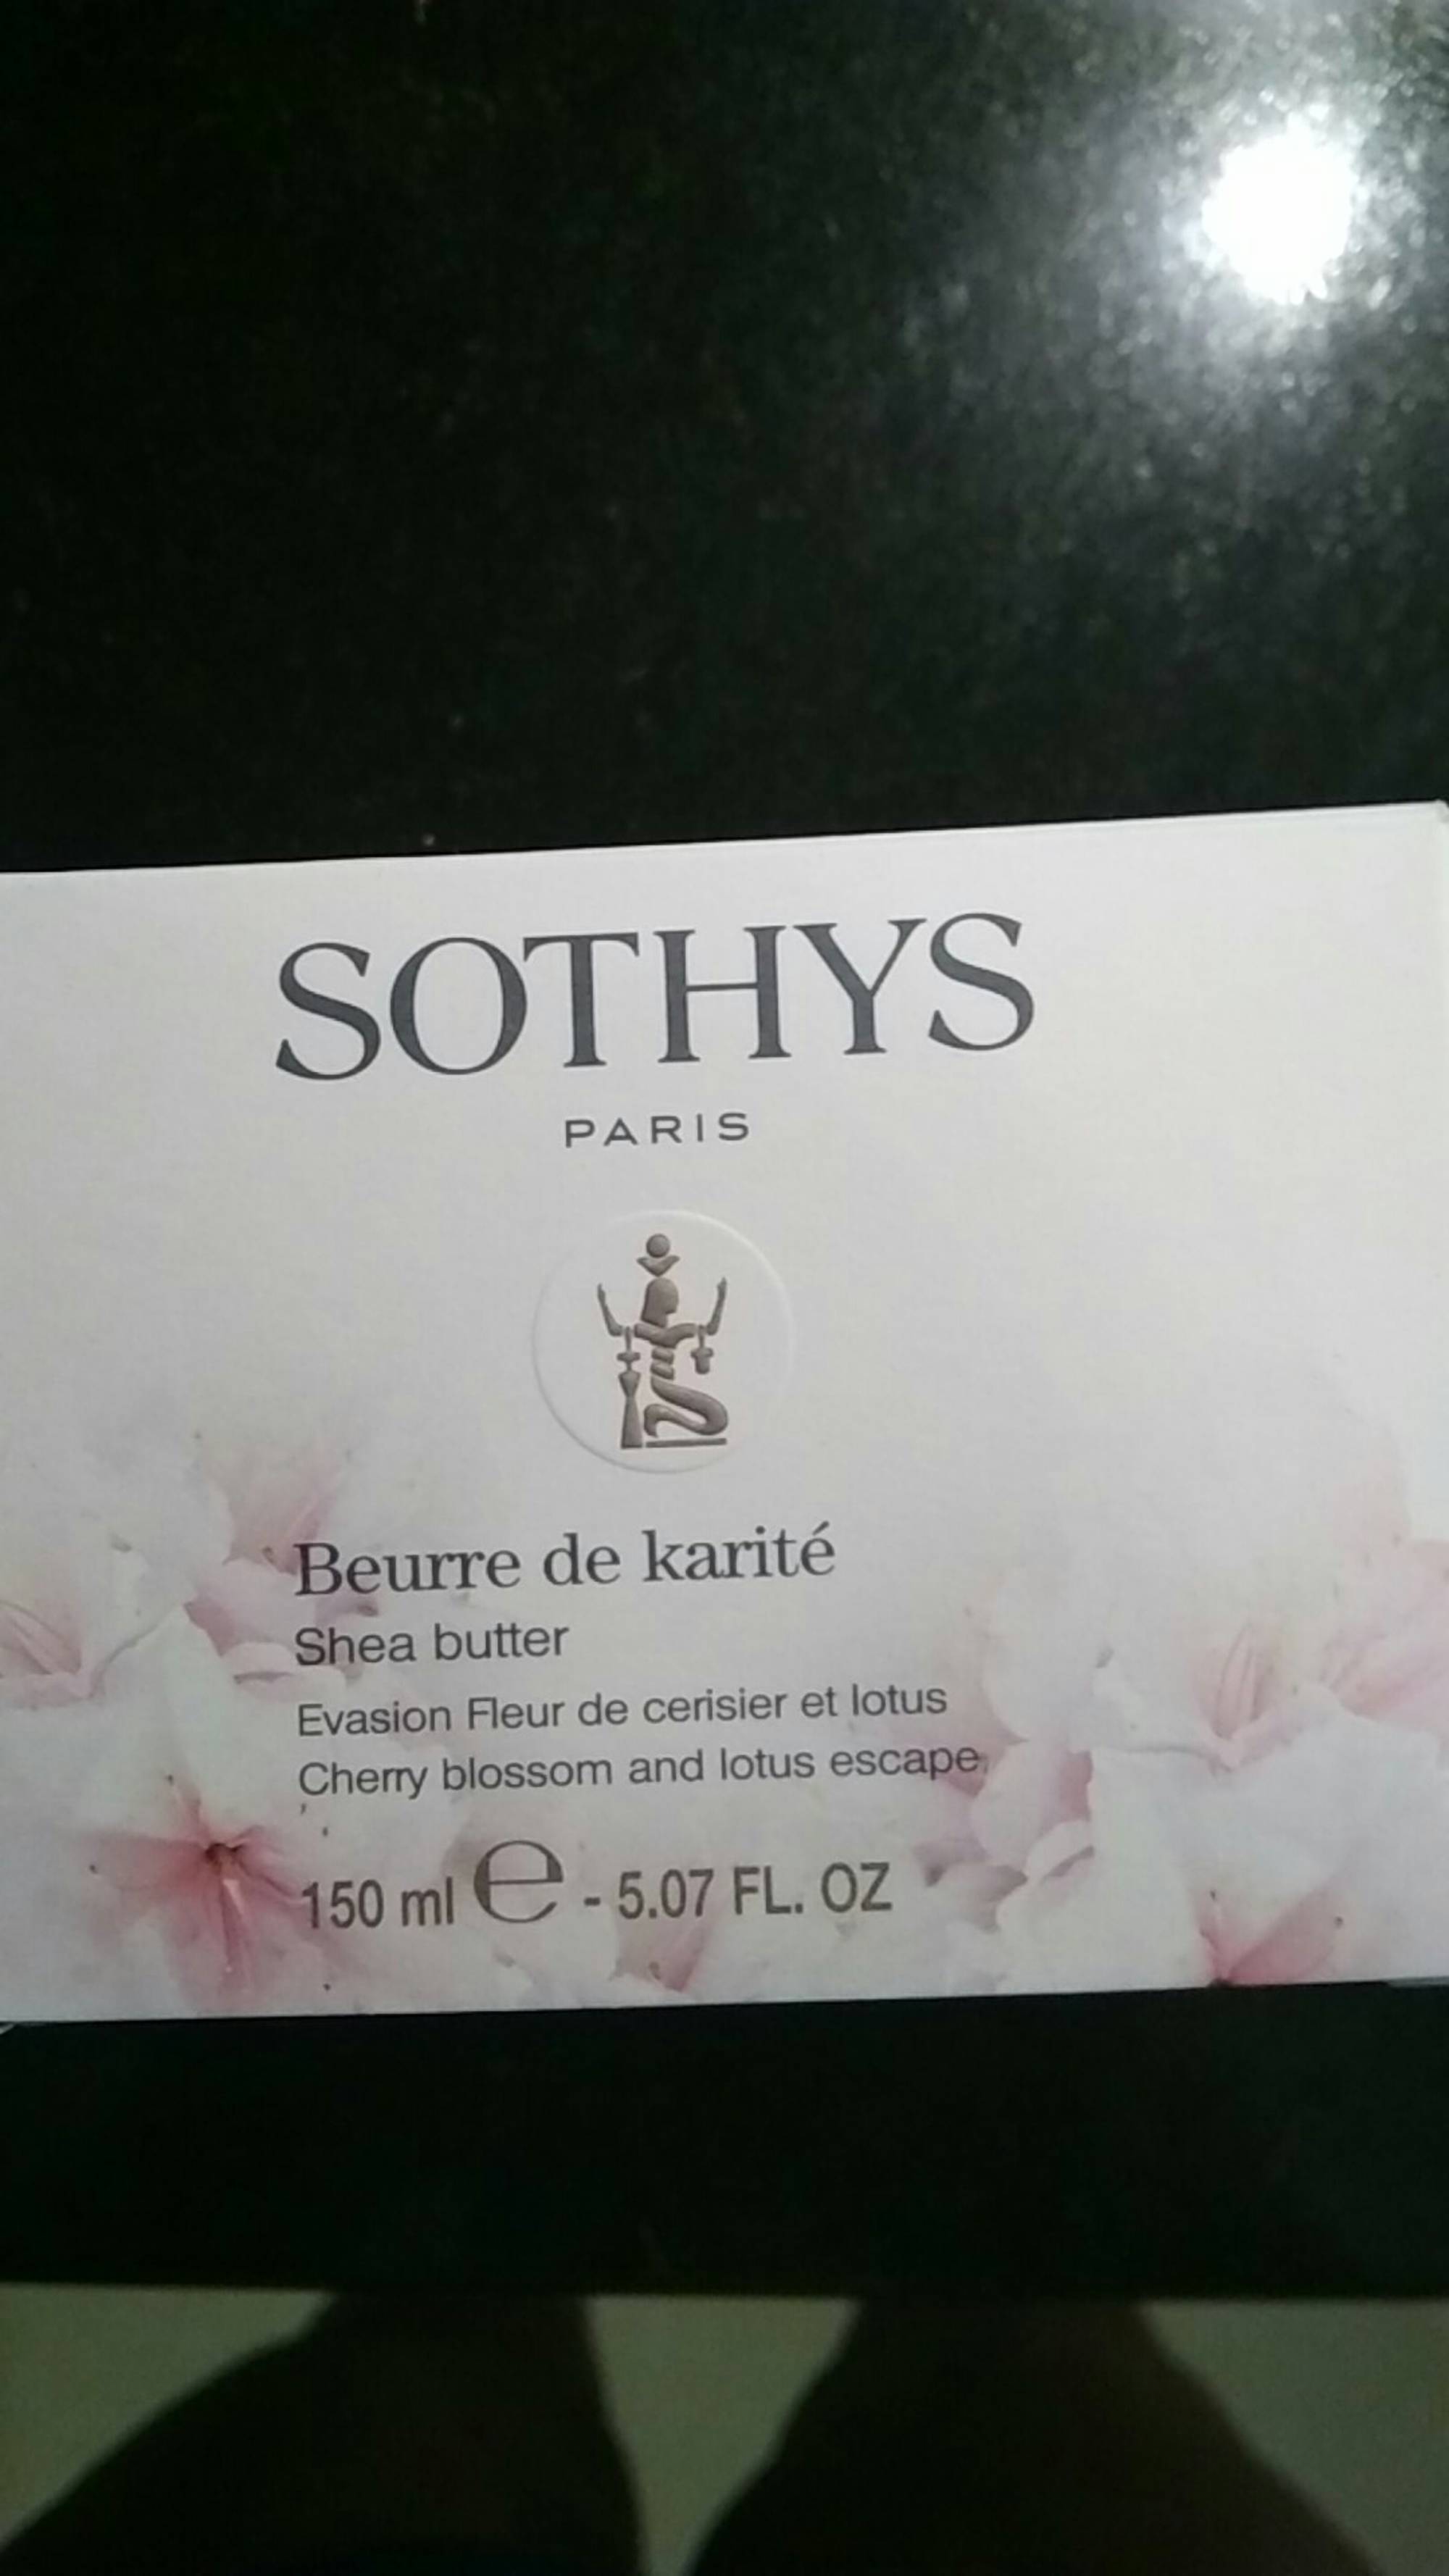 SOTHYS - Beurre de karité - Evasion Fleur de Cerisier et Lotus